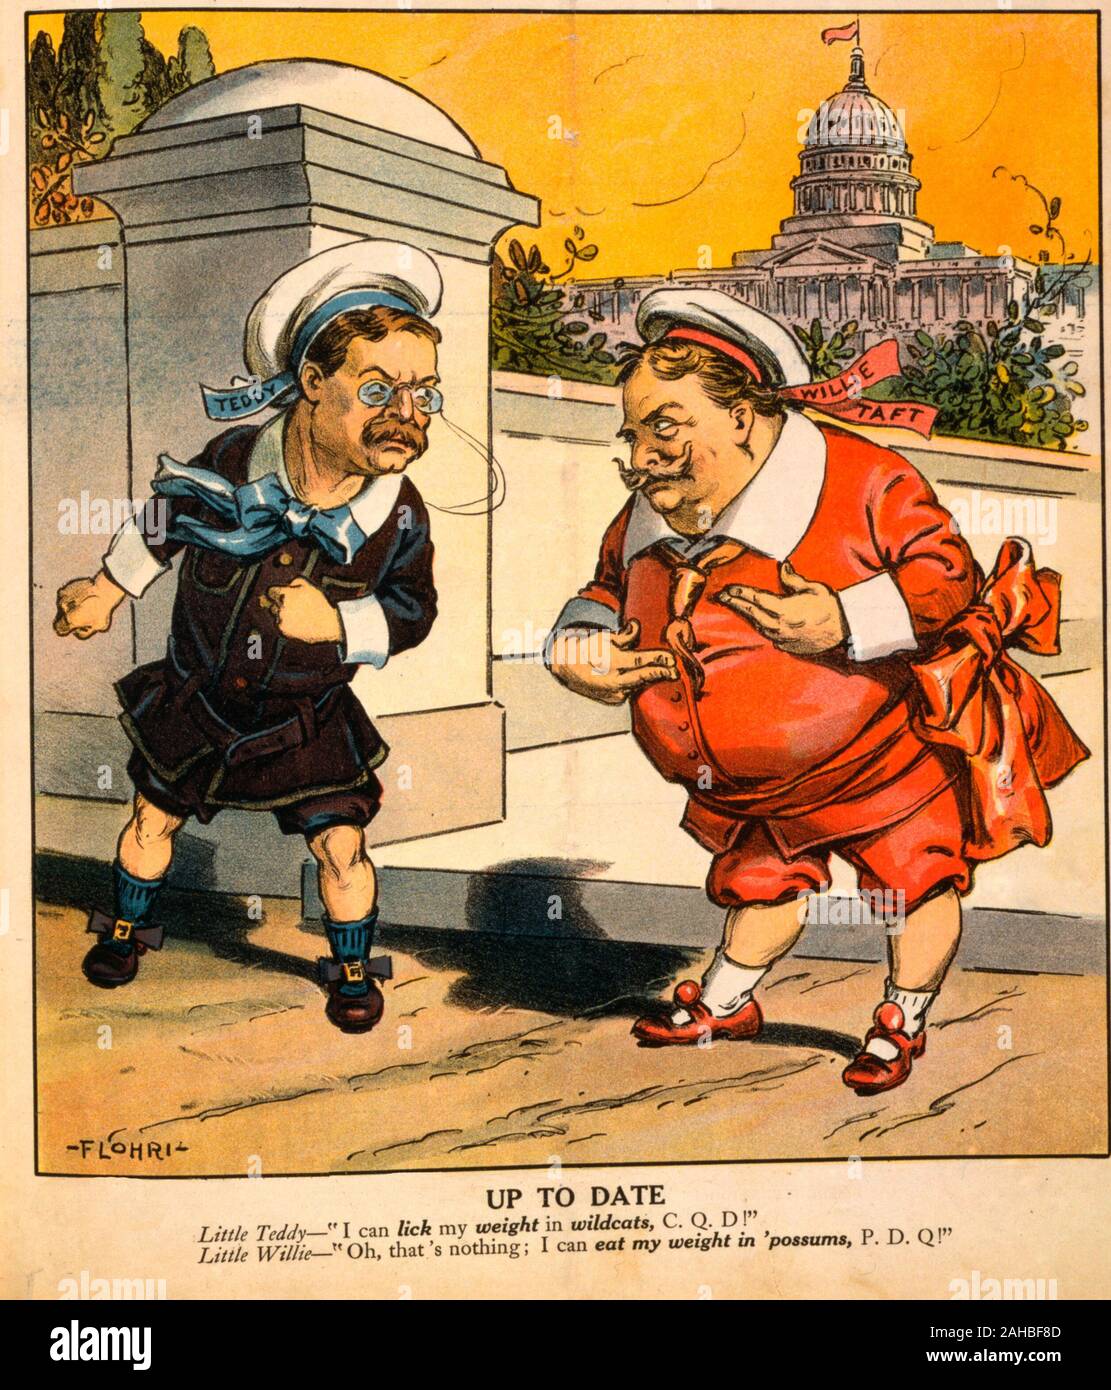 Aktuell - Theodore Roosevelt sagte William Howard Taft, 'Ich kann mein Gewicht in Wildkatzen lecken, C. F. D!", und Taft antworten: "Oh, das ist nichts; ich kann mein Gewicht in "Opossums, 1911-1915 Q!" Politische Karikatur, 1906 Essen Stockfoto